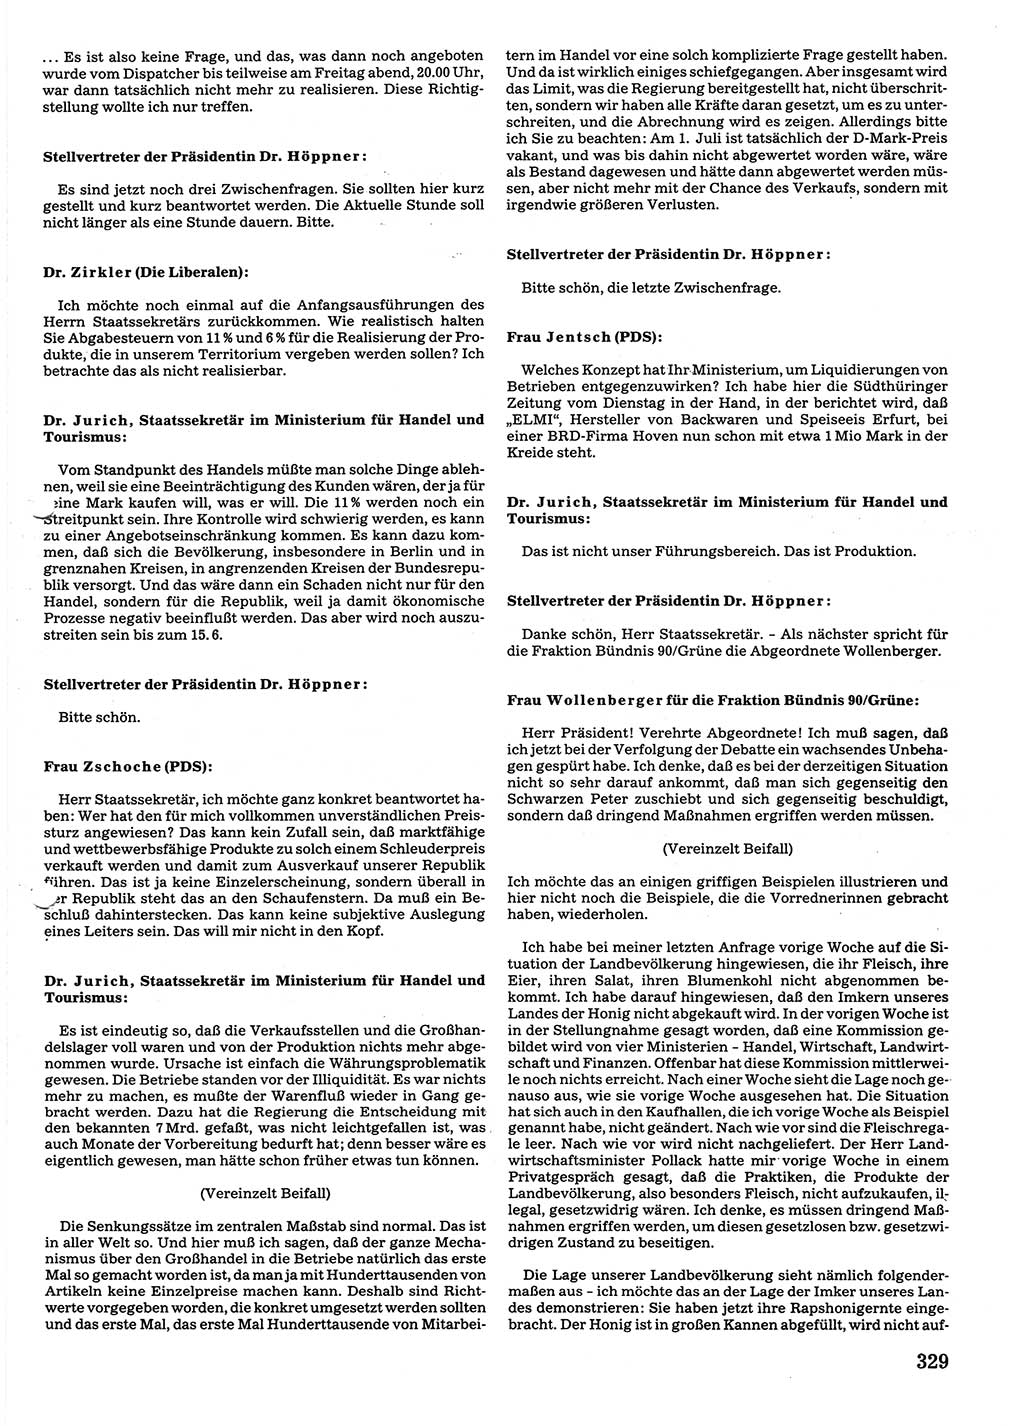 Tagungen der Volkskammer (VK) der Deutschen Demokratischen Republik (DDR), 10. Wahlperiode 1990, Seite 329 (VK. DDR 10. WP. 1990, Prot. Tg. 1-38, 5.4.-2.10.1990, S. 329)